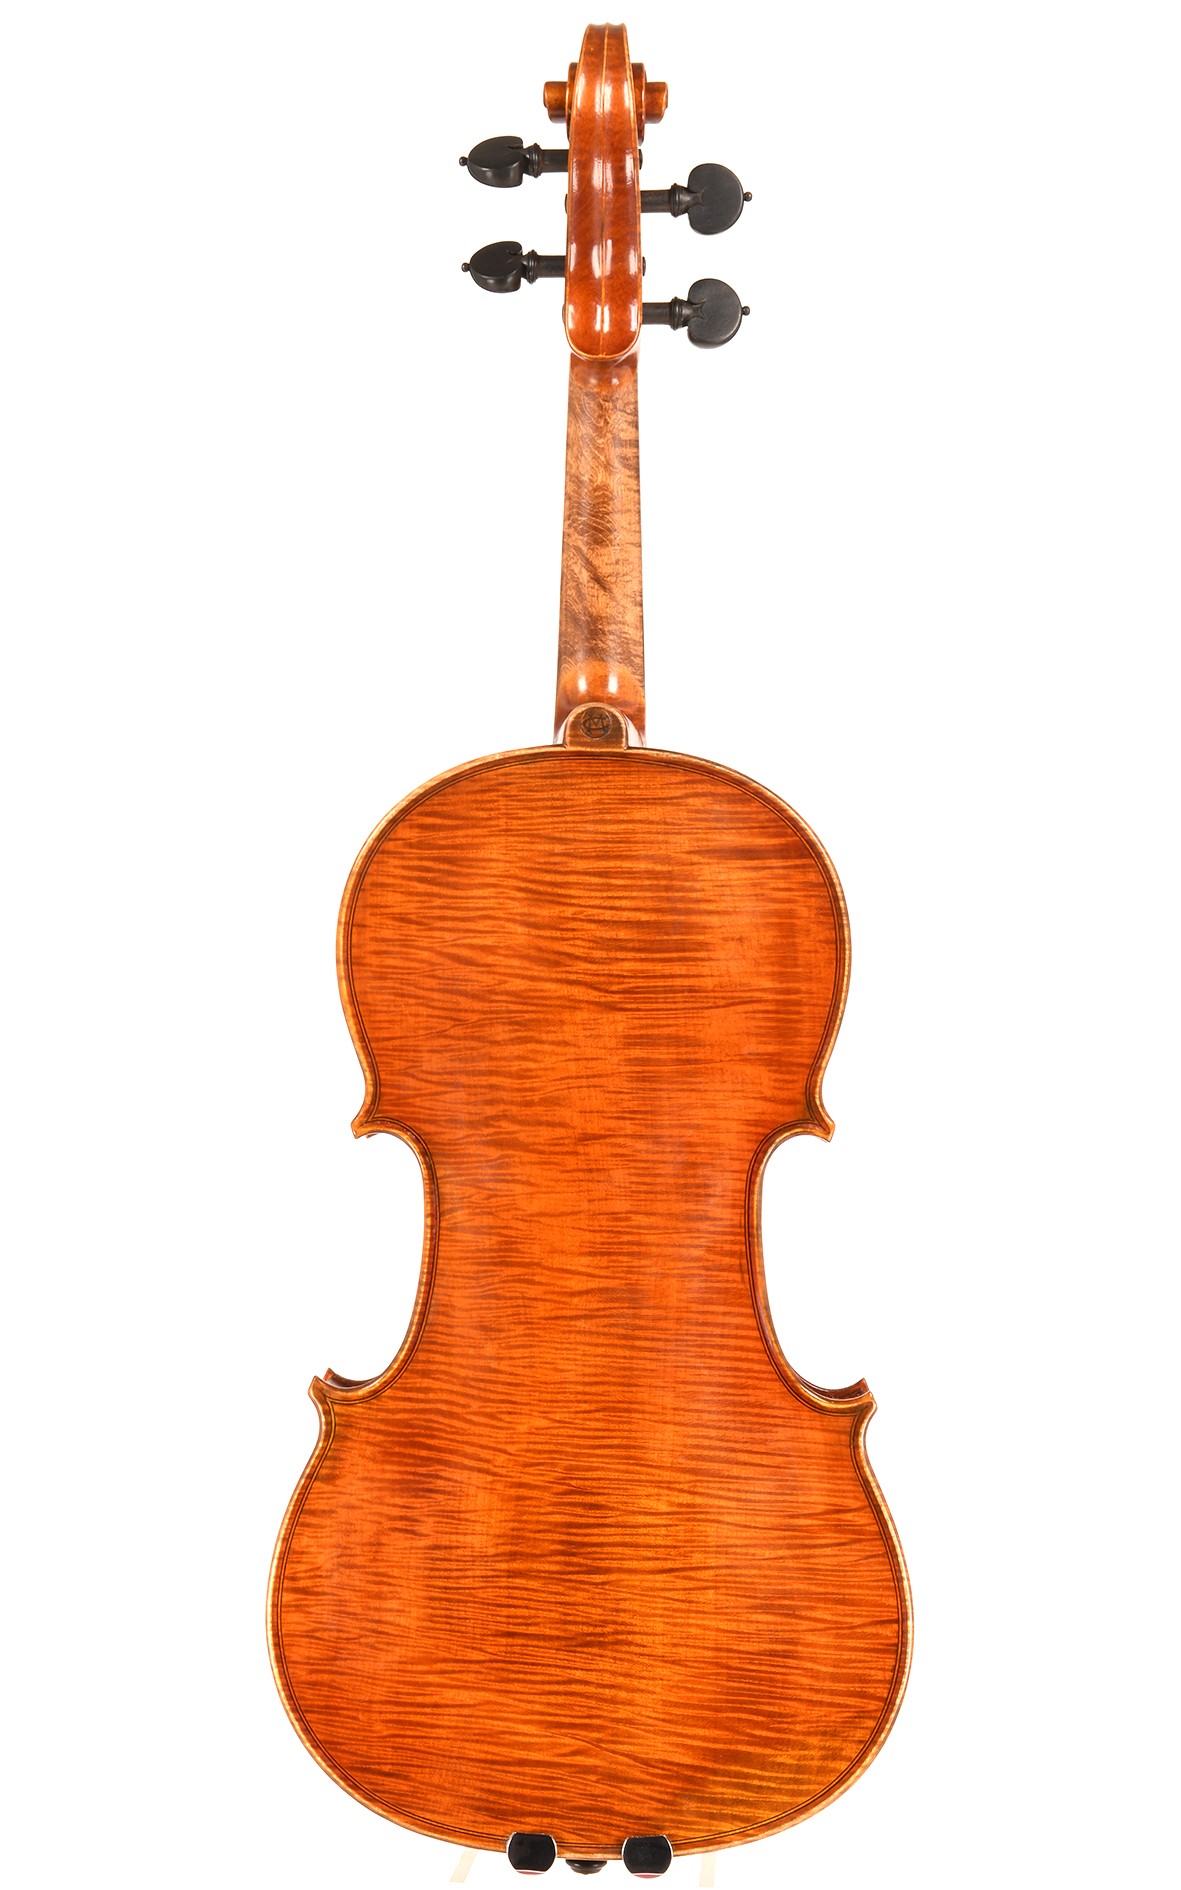 Mario Gadda violin - a specially commissioned piece